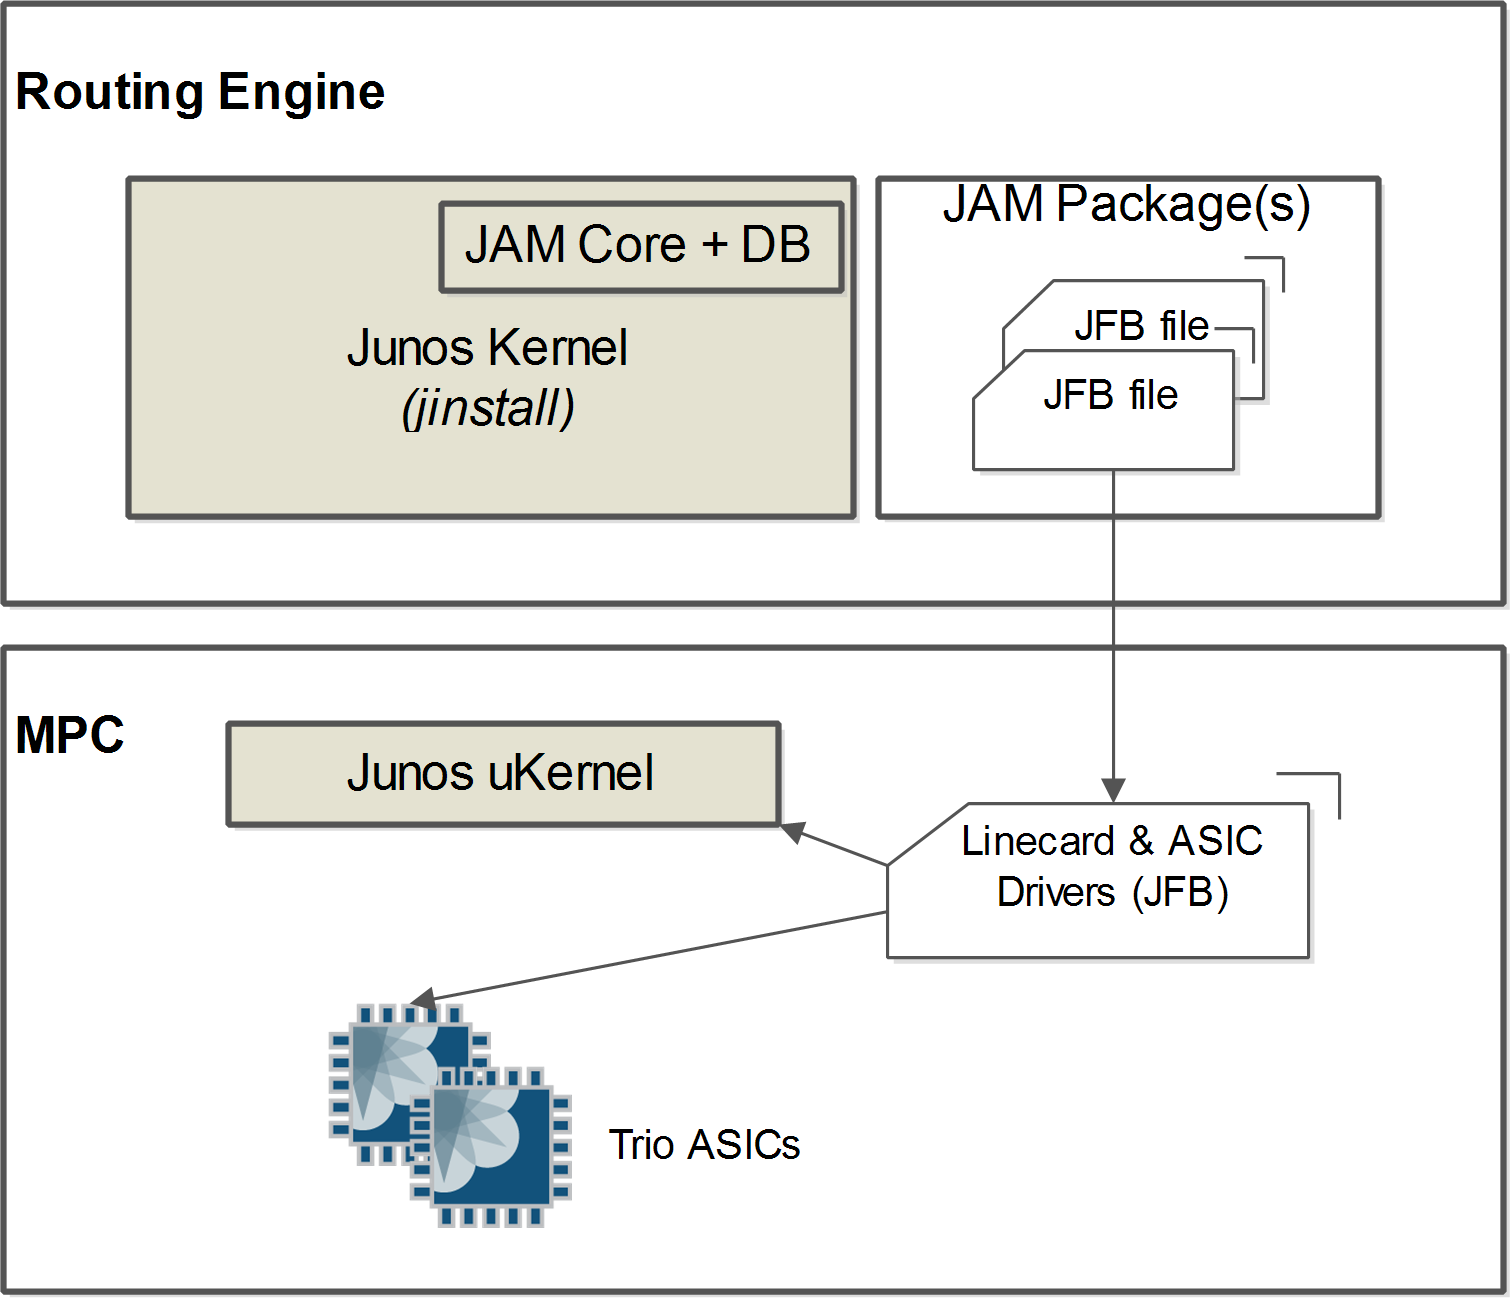 The JAM model